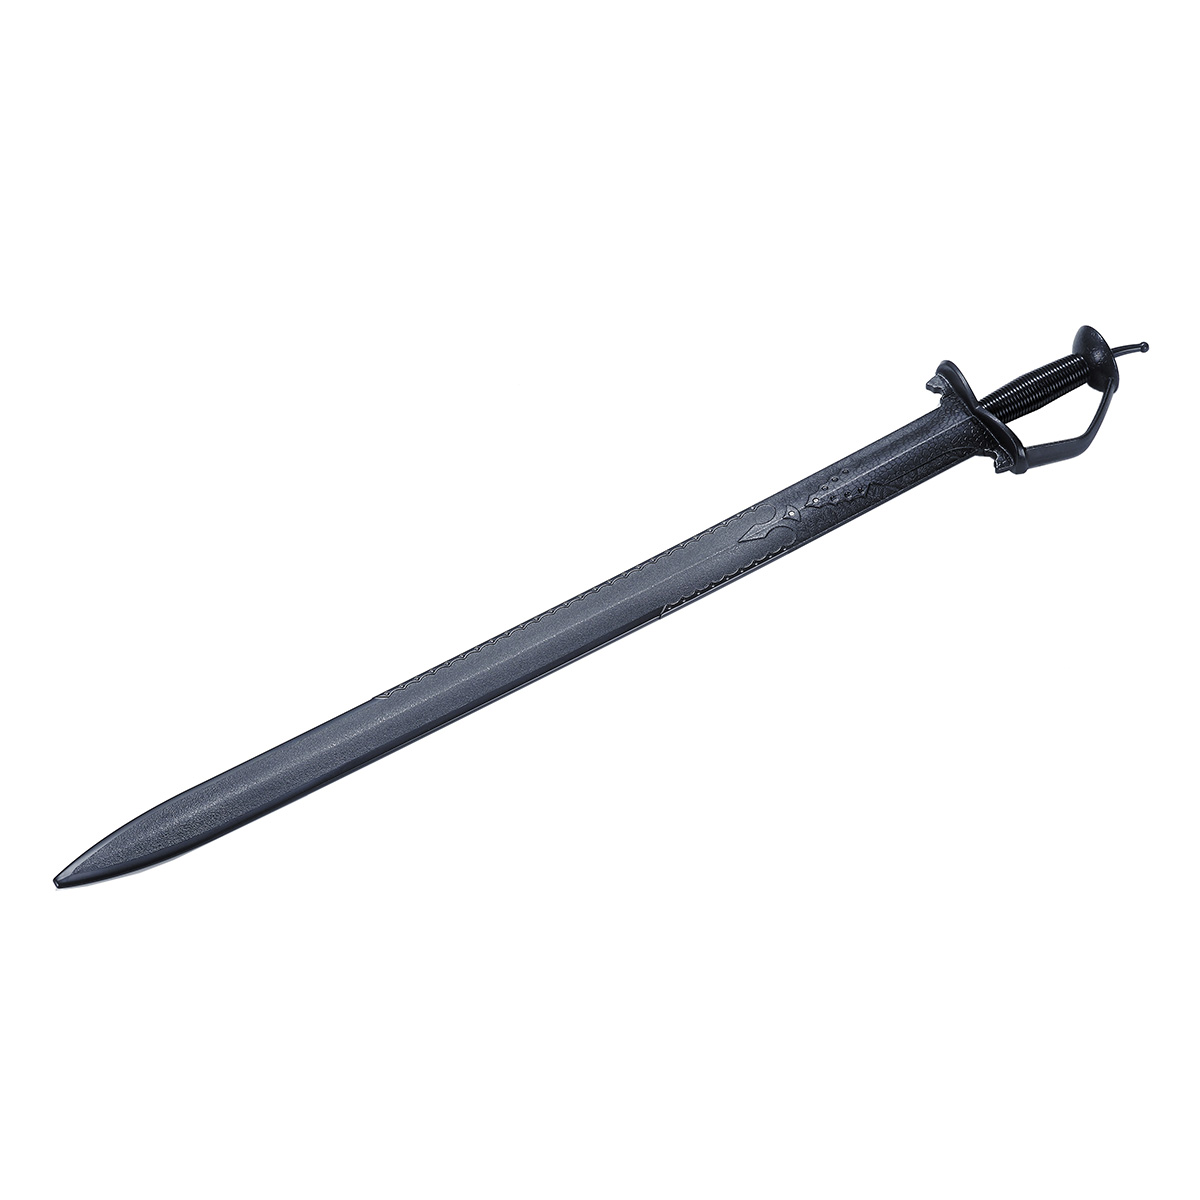 Black Polypropylene Indian Khanda Sword - Click Image to Close